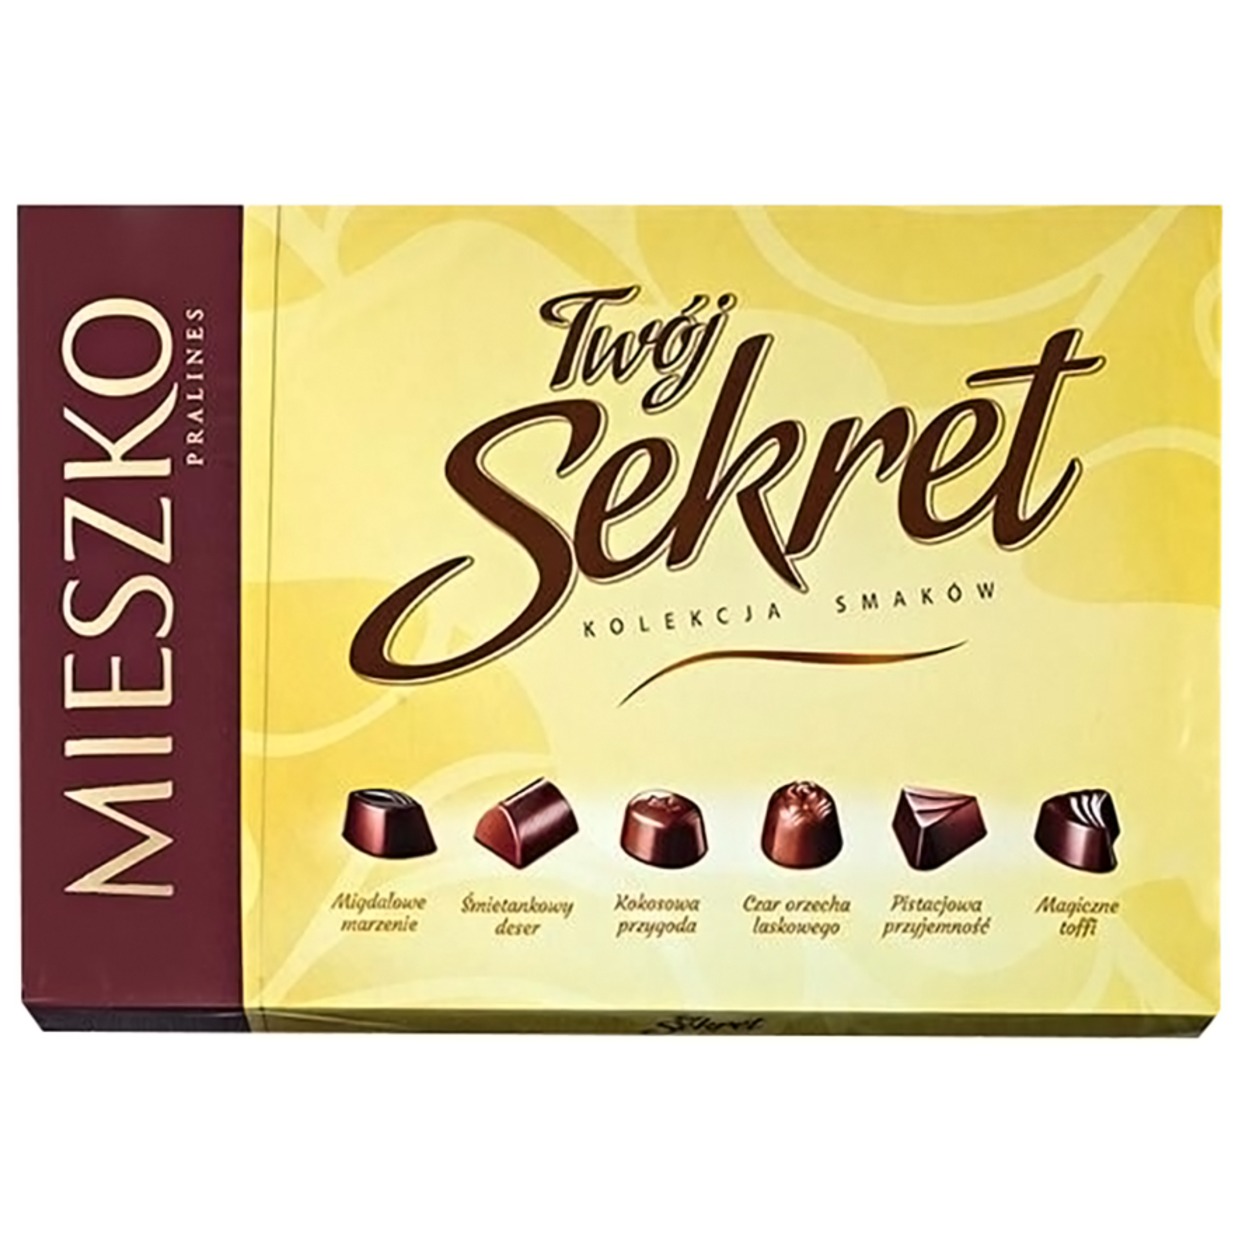 Ассорти шоколадных конфет их темного и молочного шоколада с начинкой (6 вкусов) Твой секрет 139г